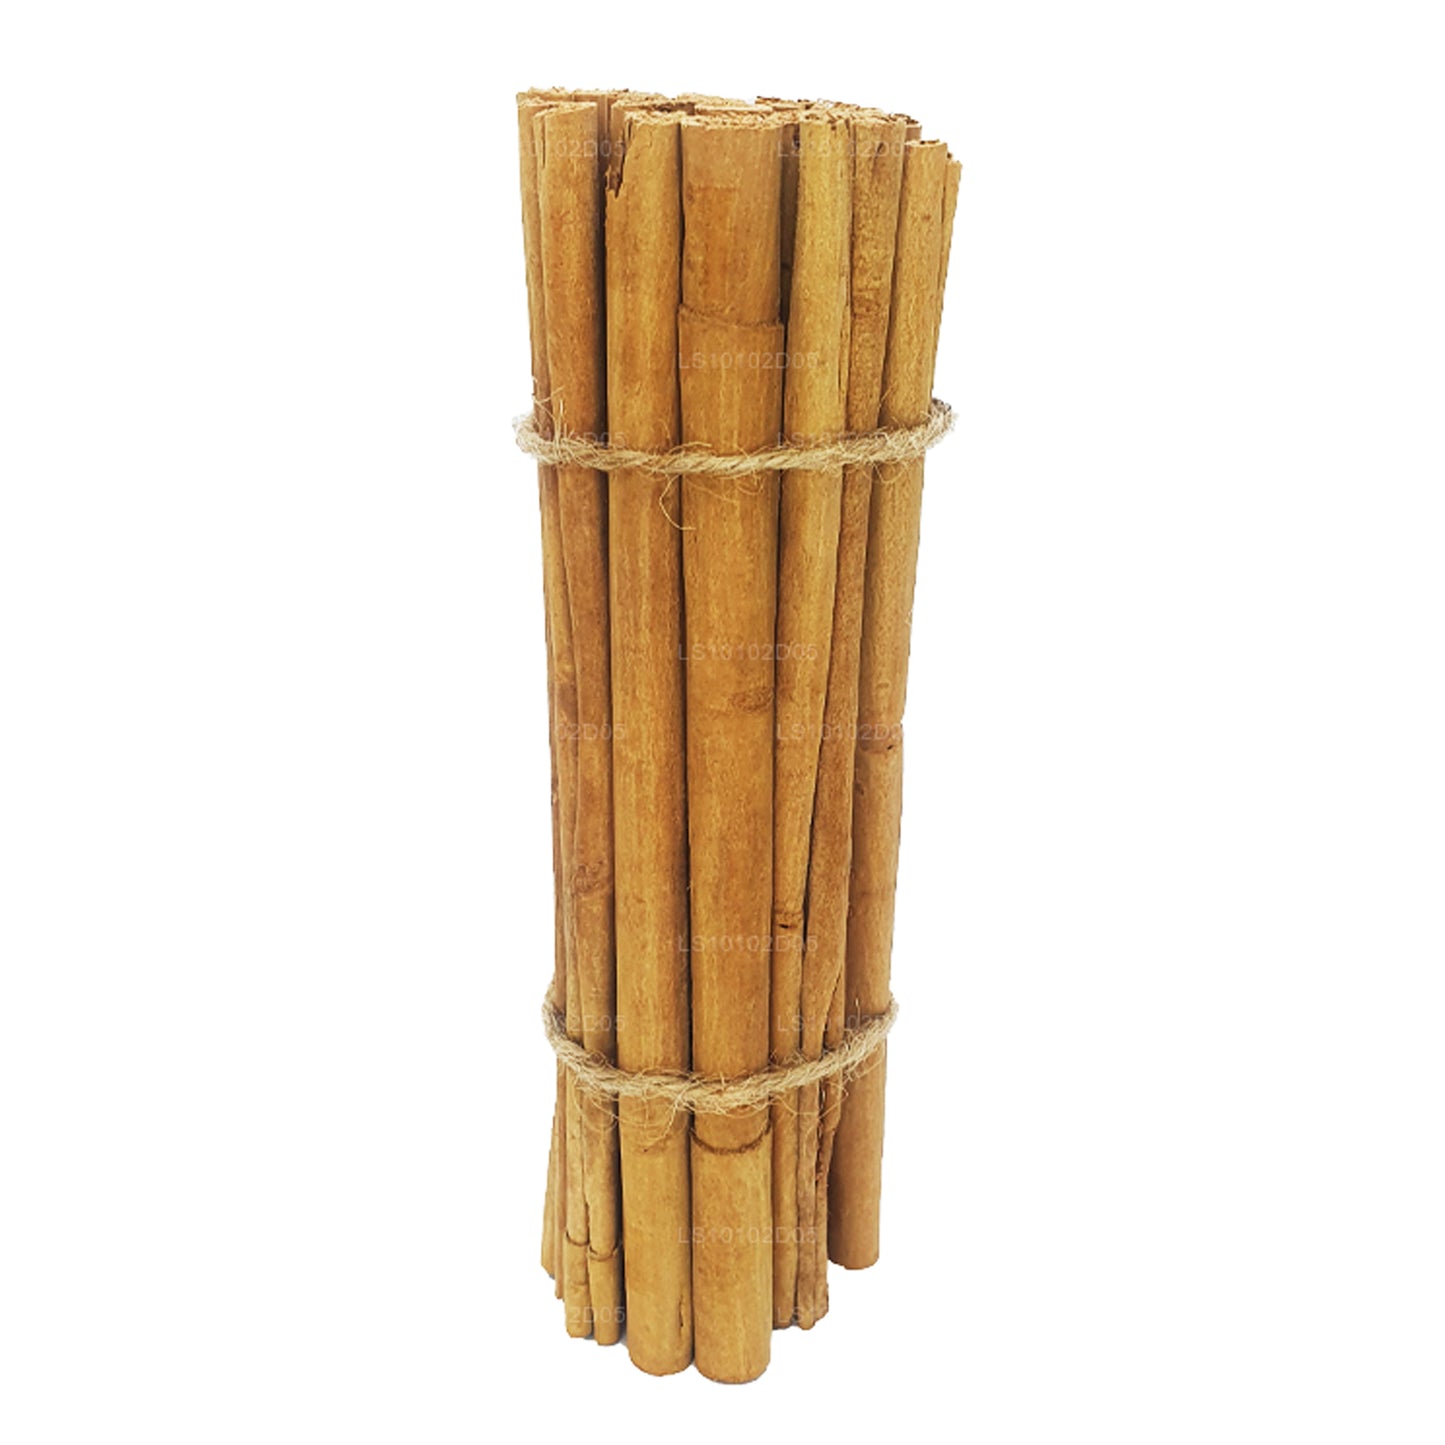 Lakpura "C5 Special" Grade Ceylon True Cinnamon Barks Pack